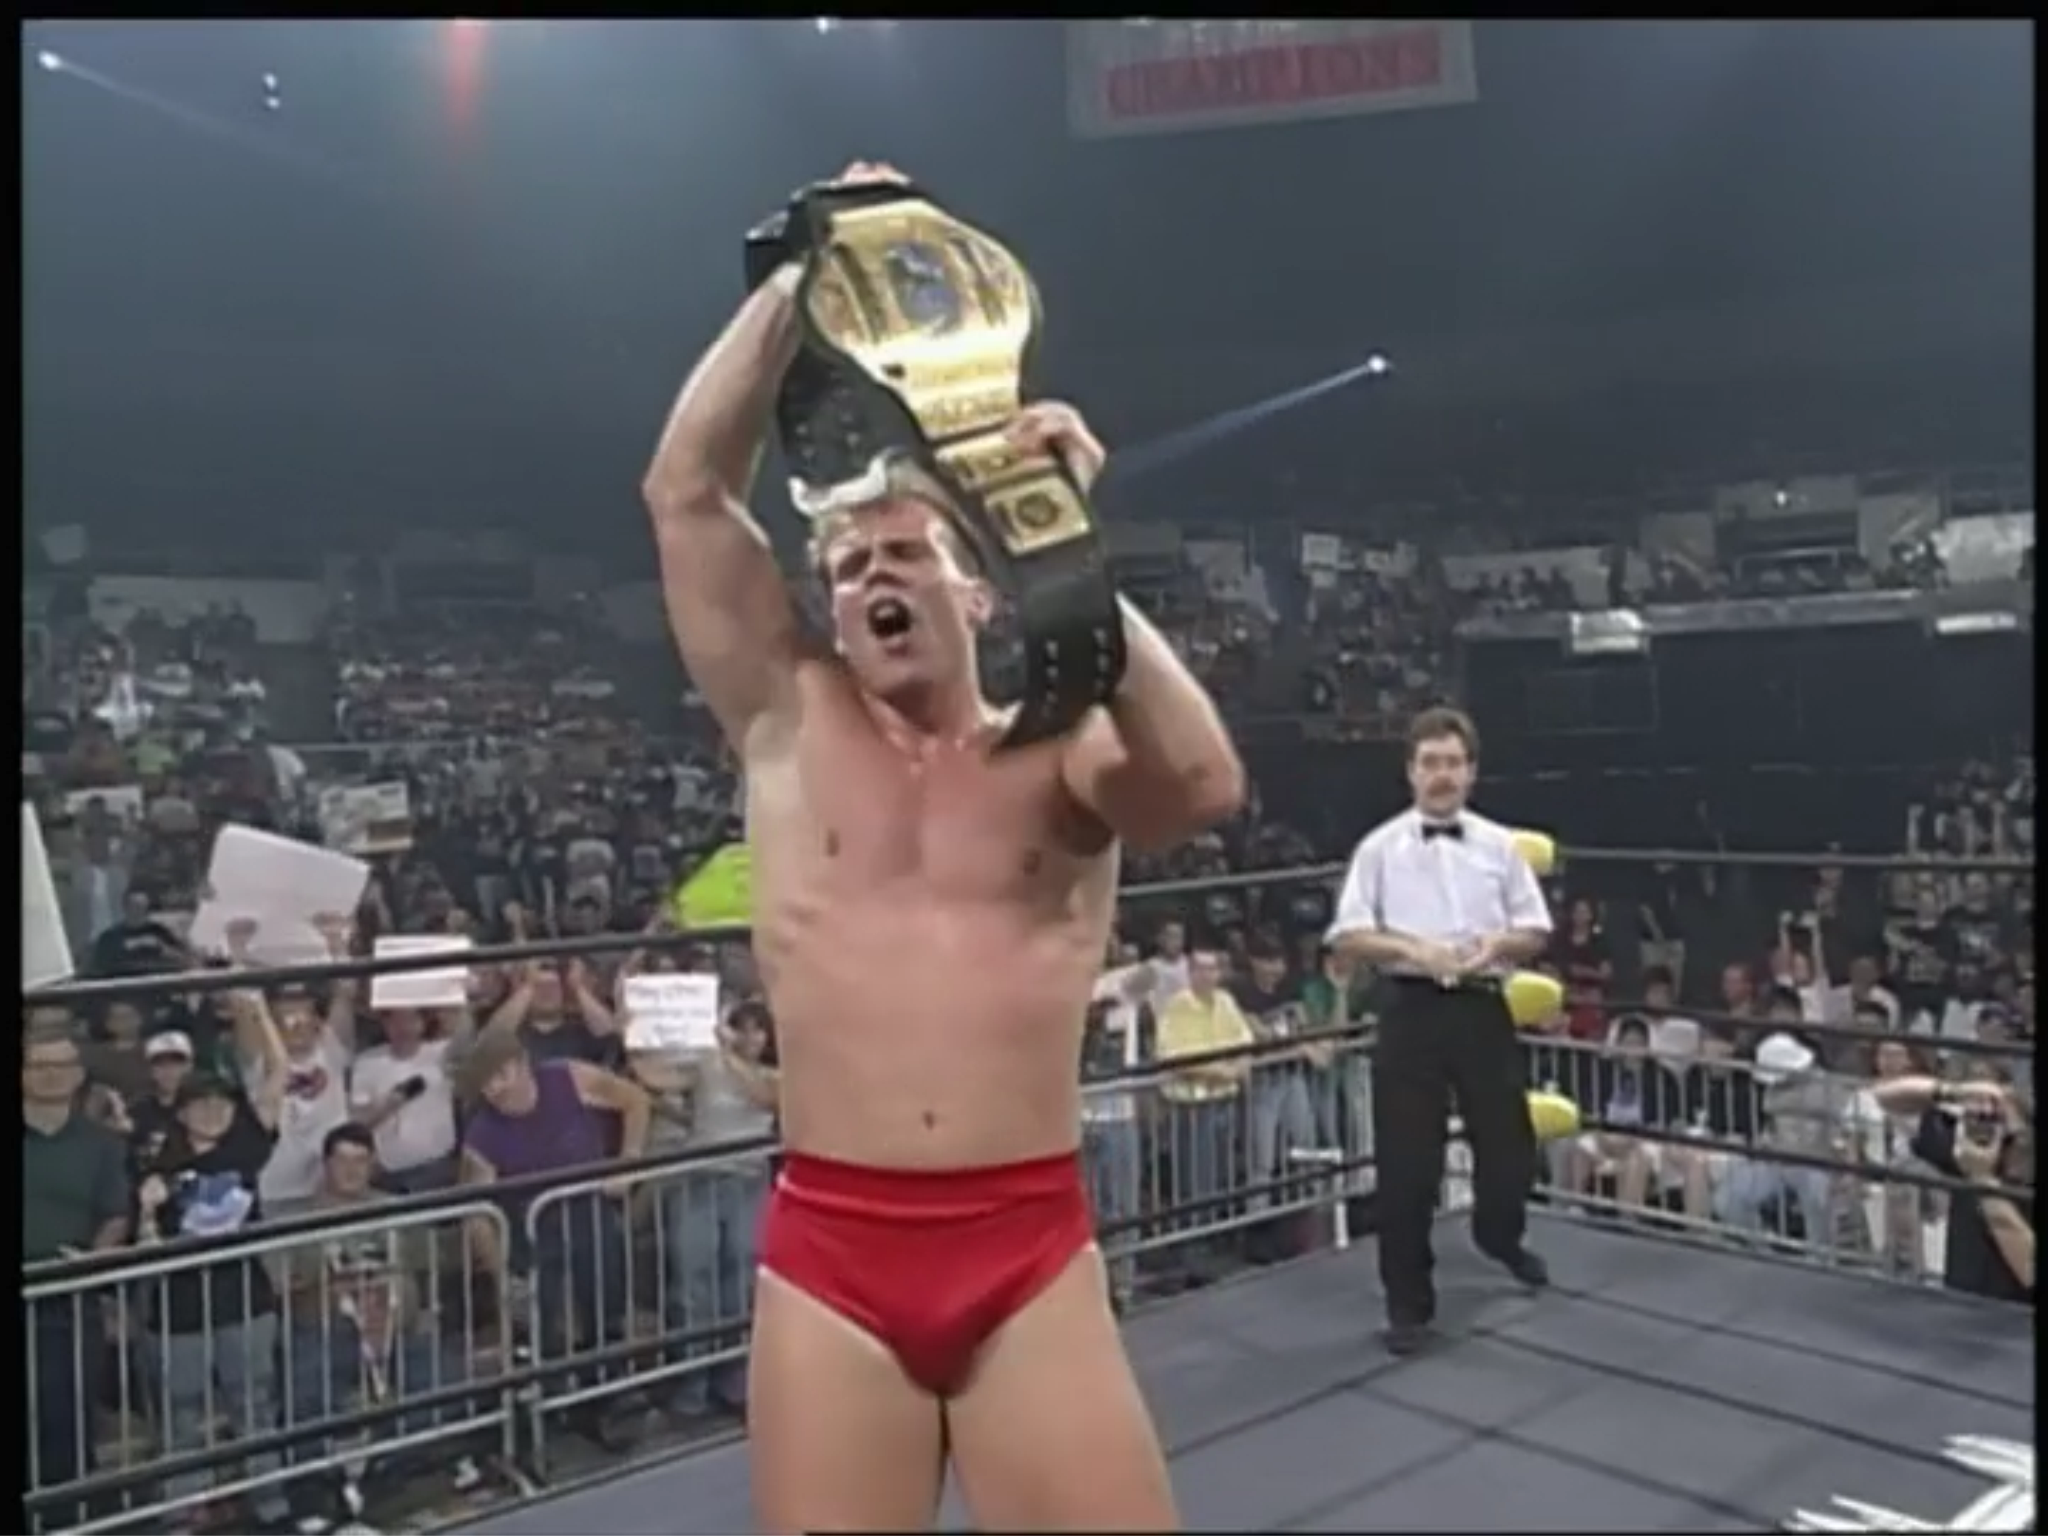 WCW Clash of Champions XXXV